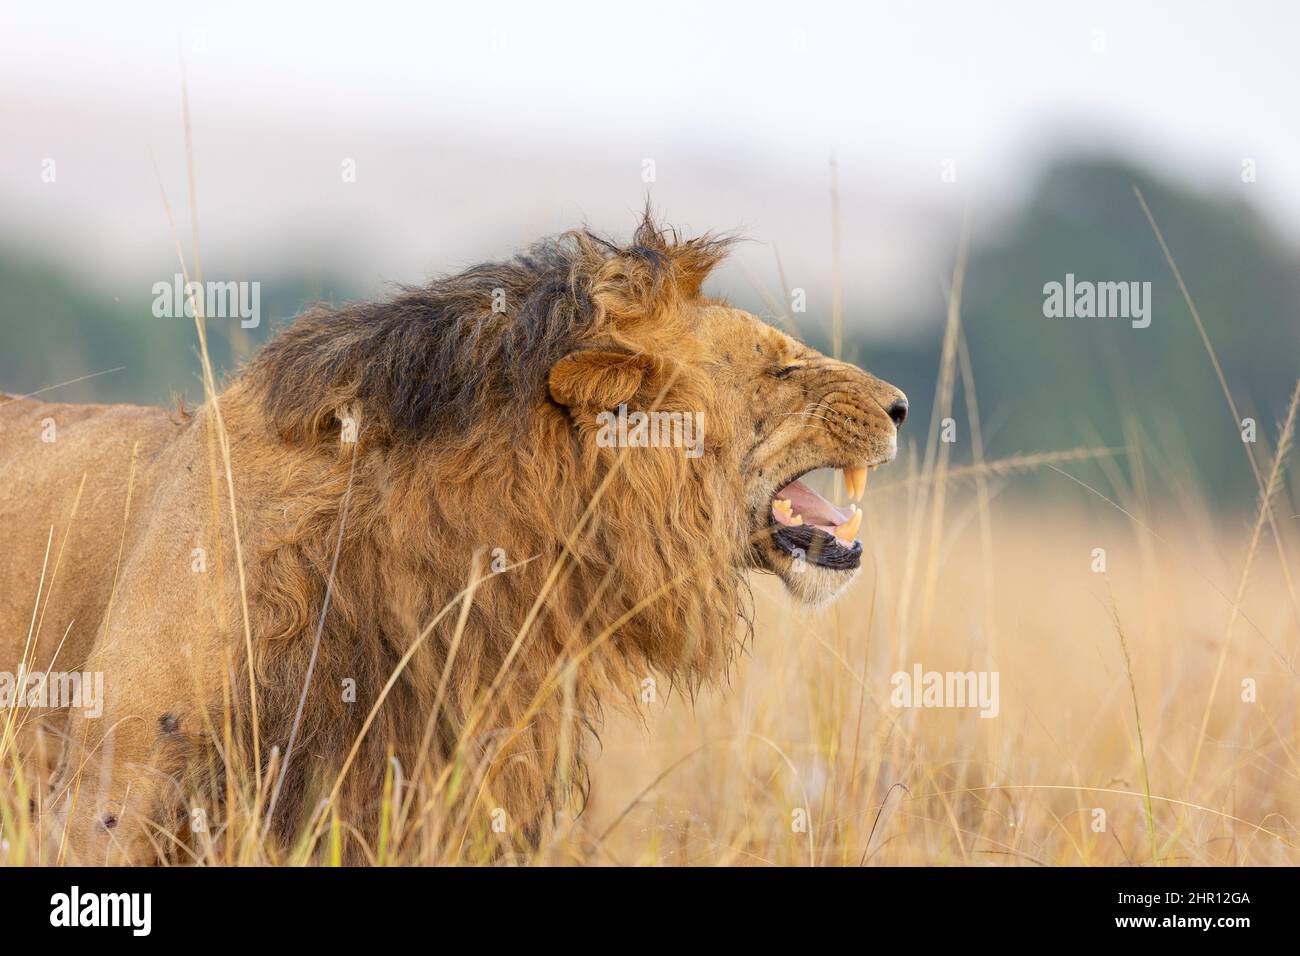 Lion (Panthera leo) Flehmen reaction, Masai Mara National Reserve, National Park, Kenya Stock Photo